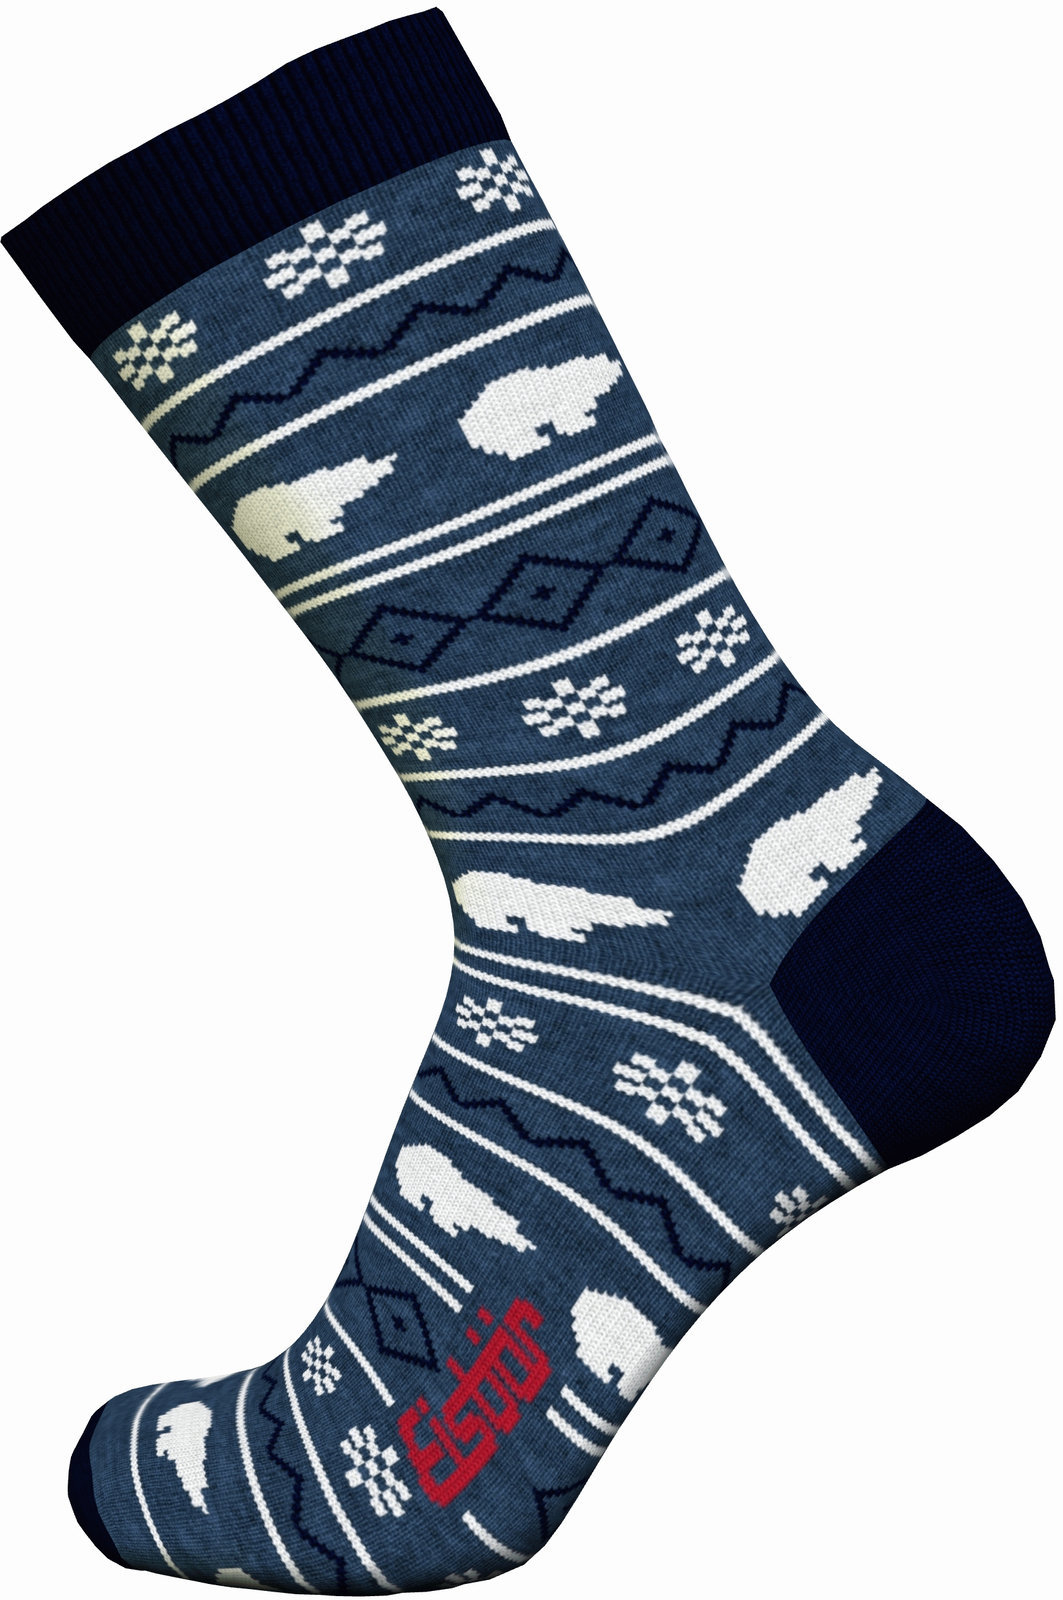 Skijaške čarape Eisbär Lifestyle Jacquard Avio/Navy-Grey/White 43-45 Skijaške čarape